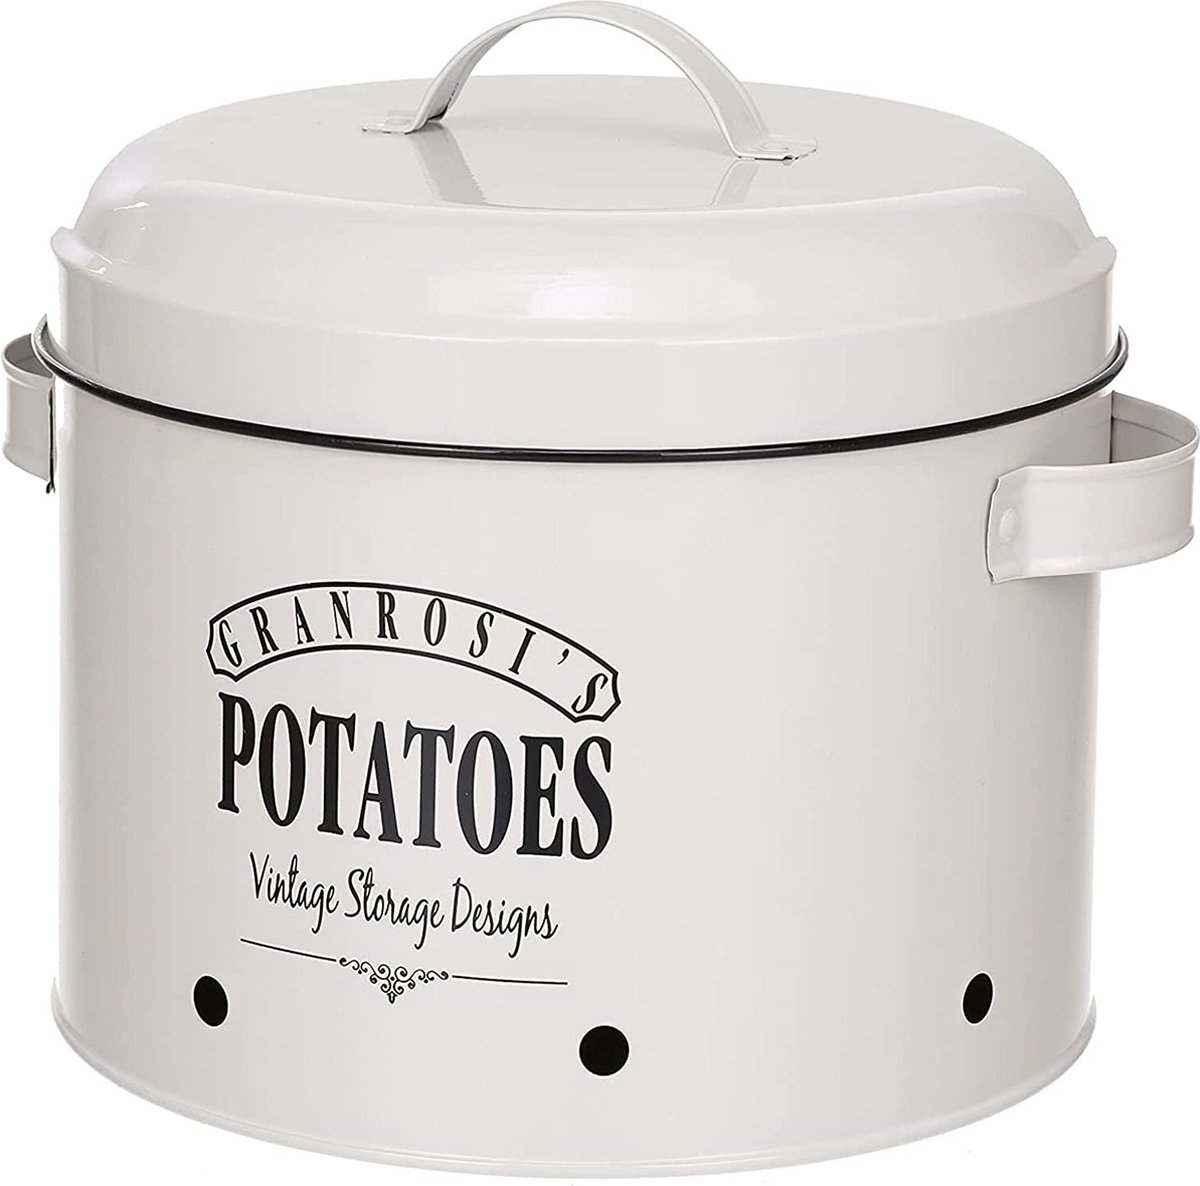 Voorraadblik voor aardappelen in jaren 40 vintage stijl om stijlvolle aardappelen in te bewaren